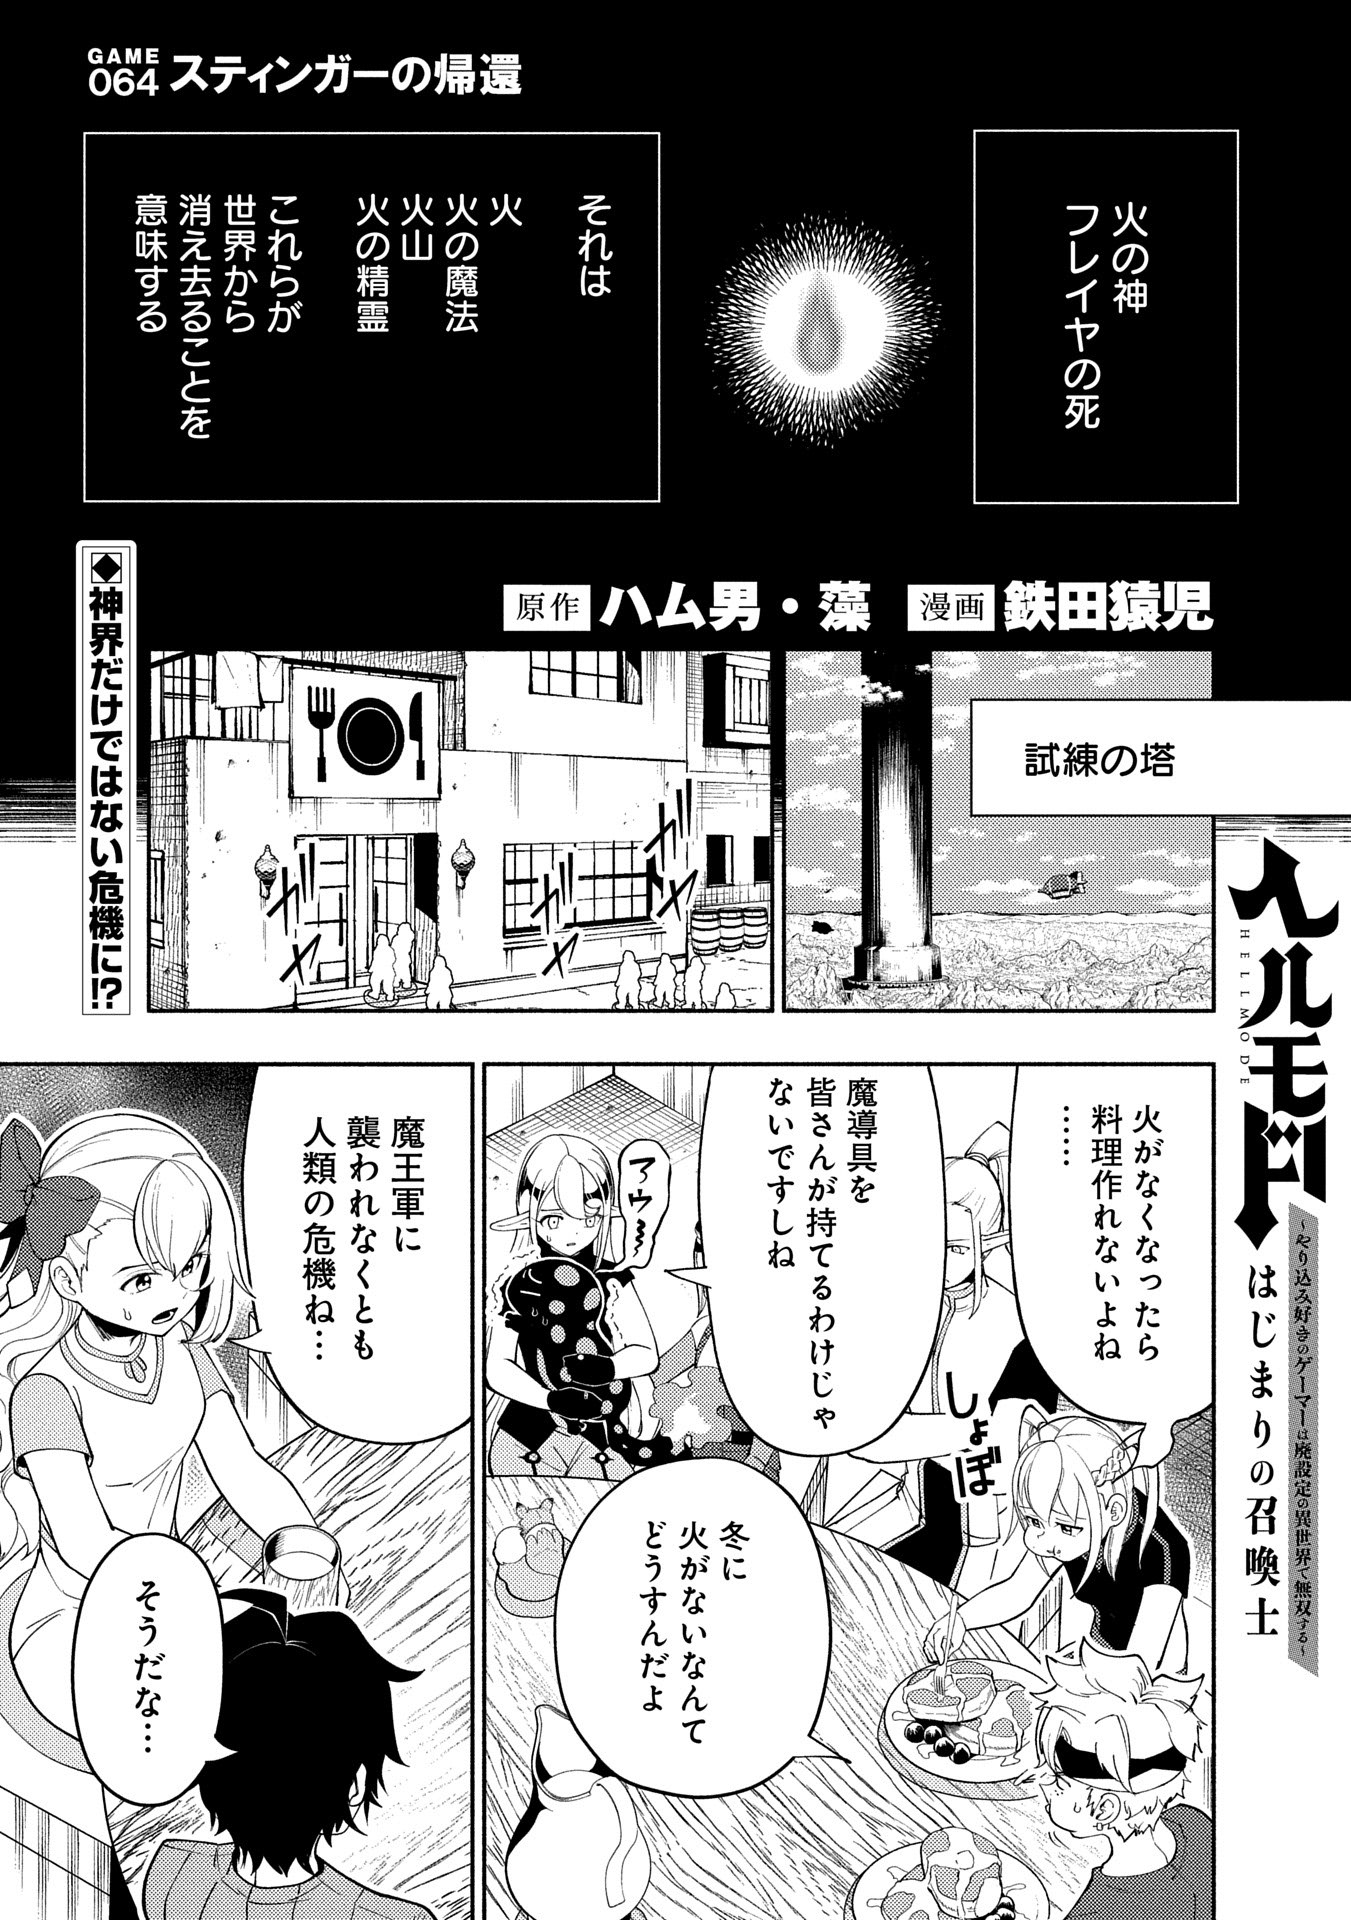 Hell Mode: Yarikomi Suki no Gamer wa Hai Settei no Isekai de Musou Suru - Chapter 64 - Page 1